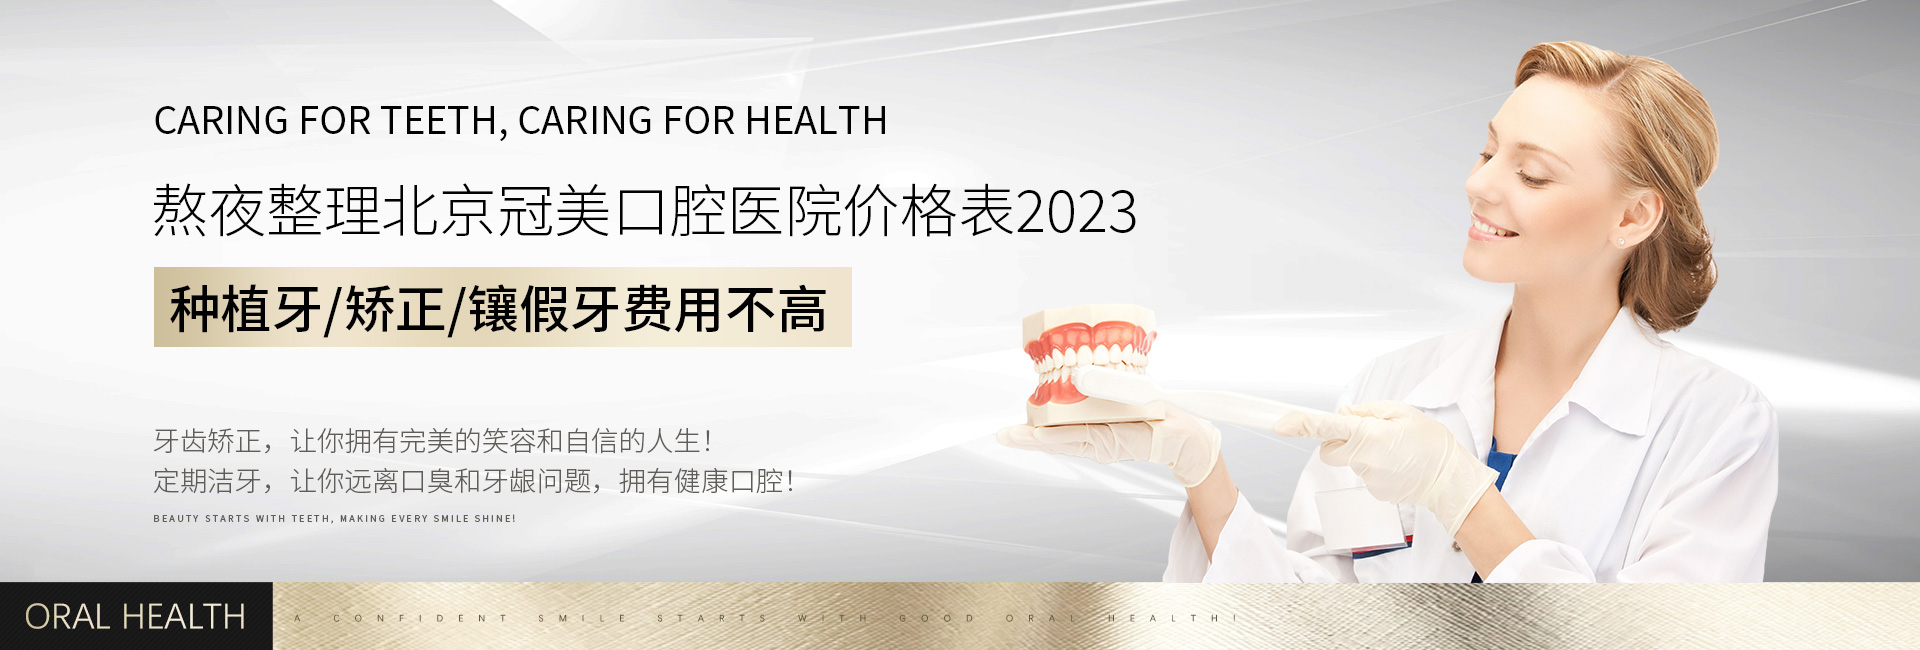 熬夜整理北京冠美口腔医院价格表2023,种植牙/矫正/镶假牙费用不高